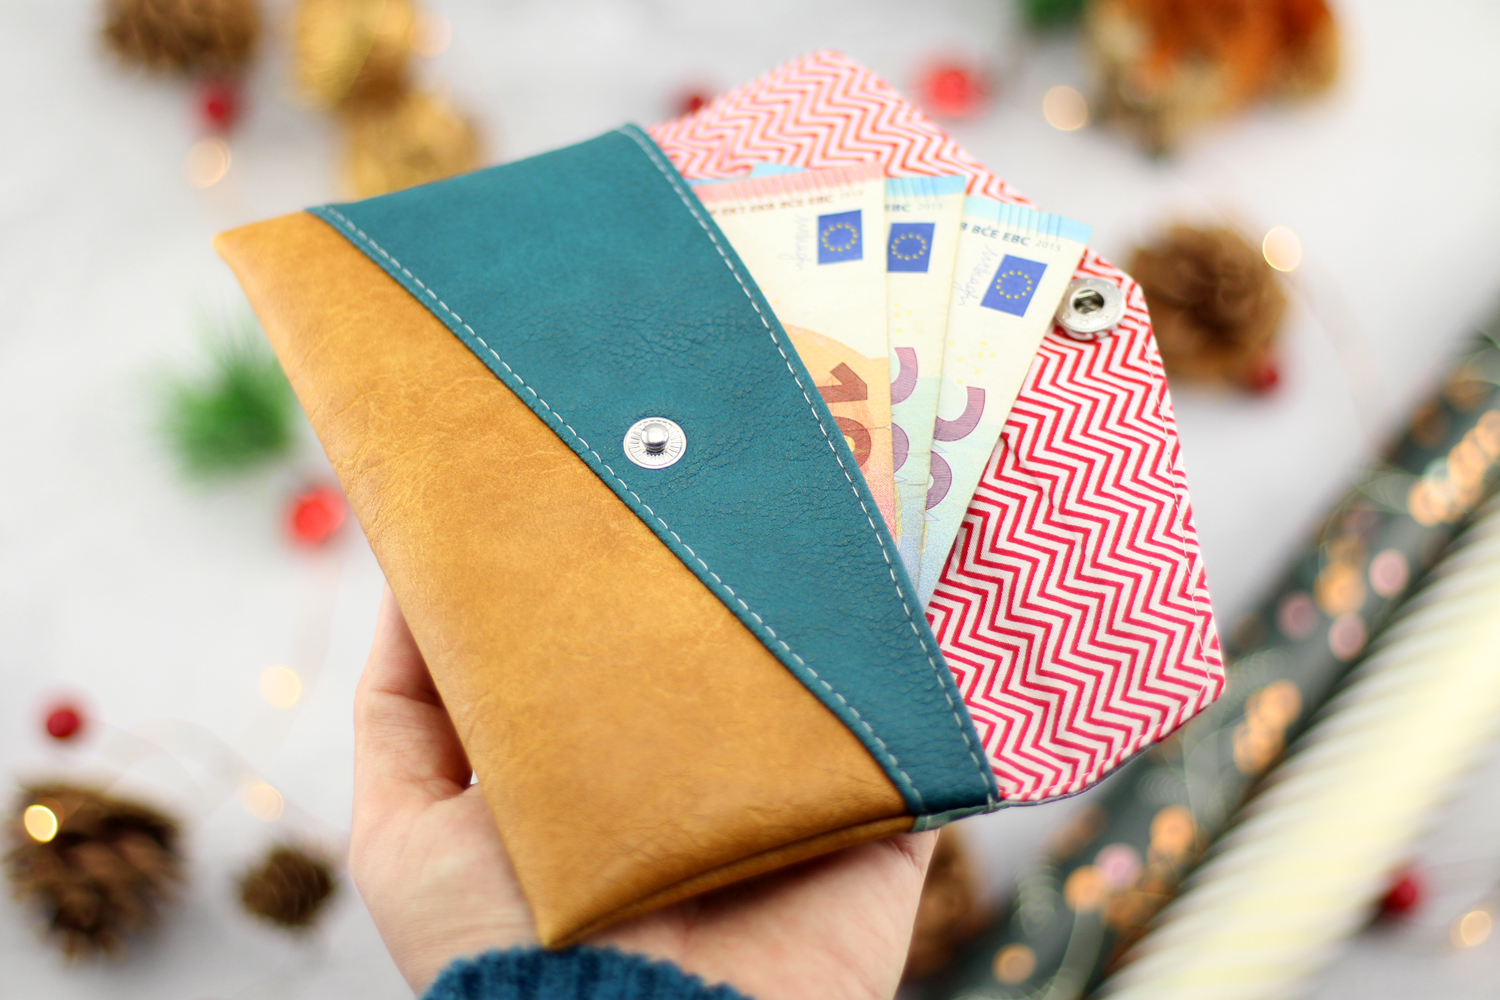 Freebook Smartphonetasche KUORI einfach zweckentfremden und als Geldumschlag nähen – perfektes, selbstgenähtes Last Minute Geschenk!